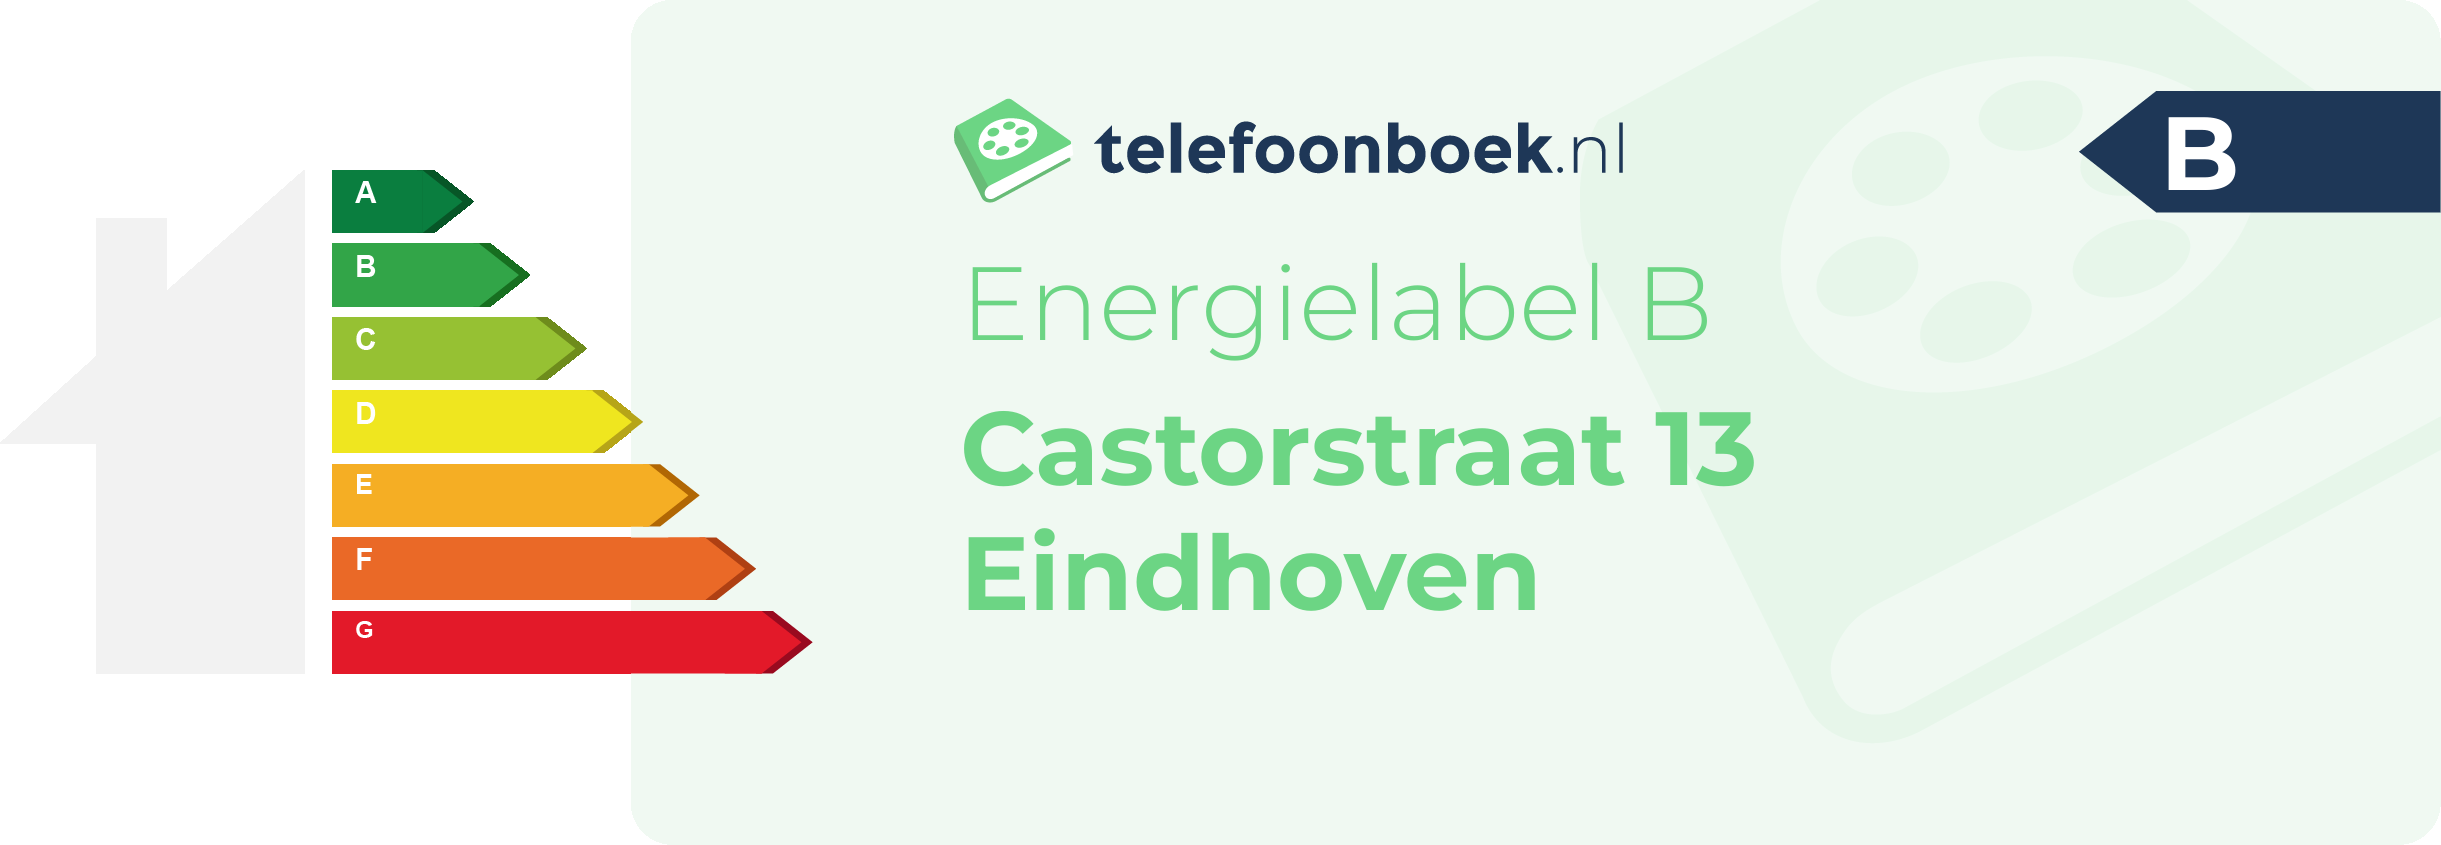 Energielabel Castorstraat 13 Eindhoven